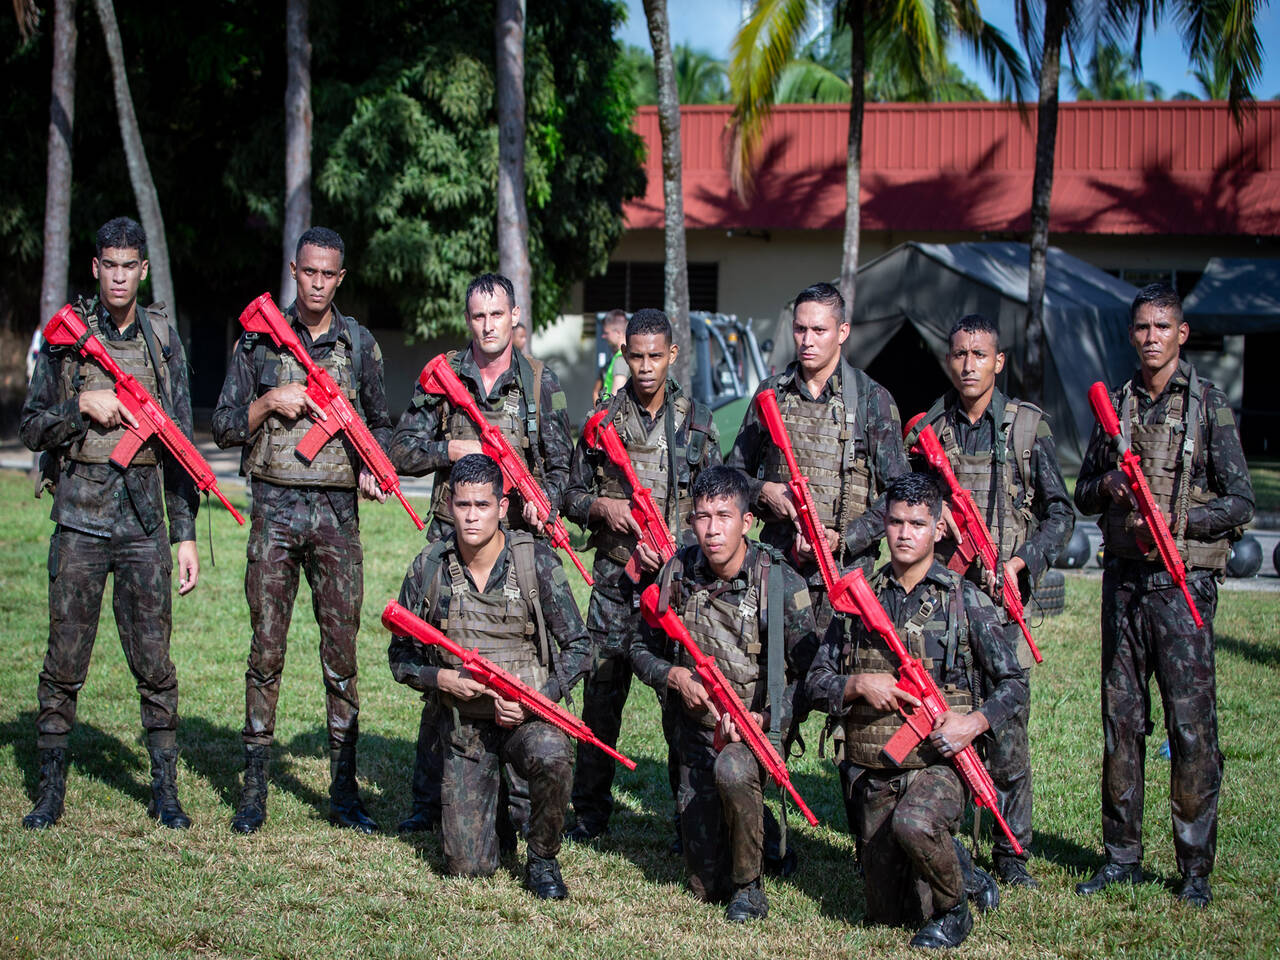 Exército Brasileiro participa de operação na fronteira com Guiana